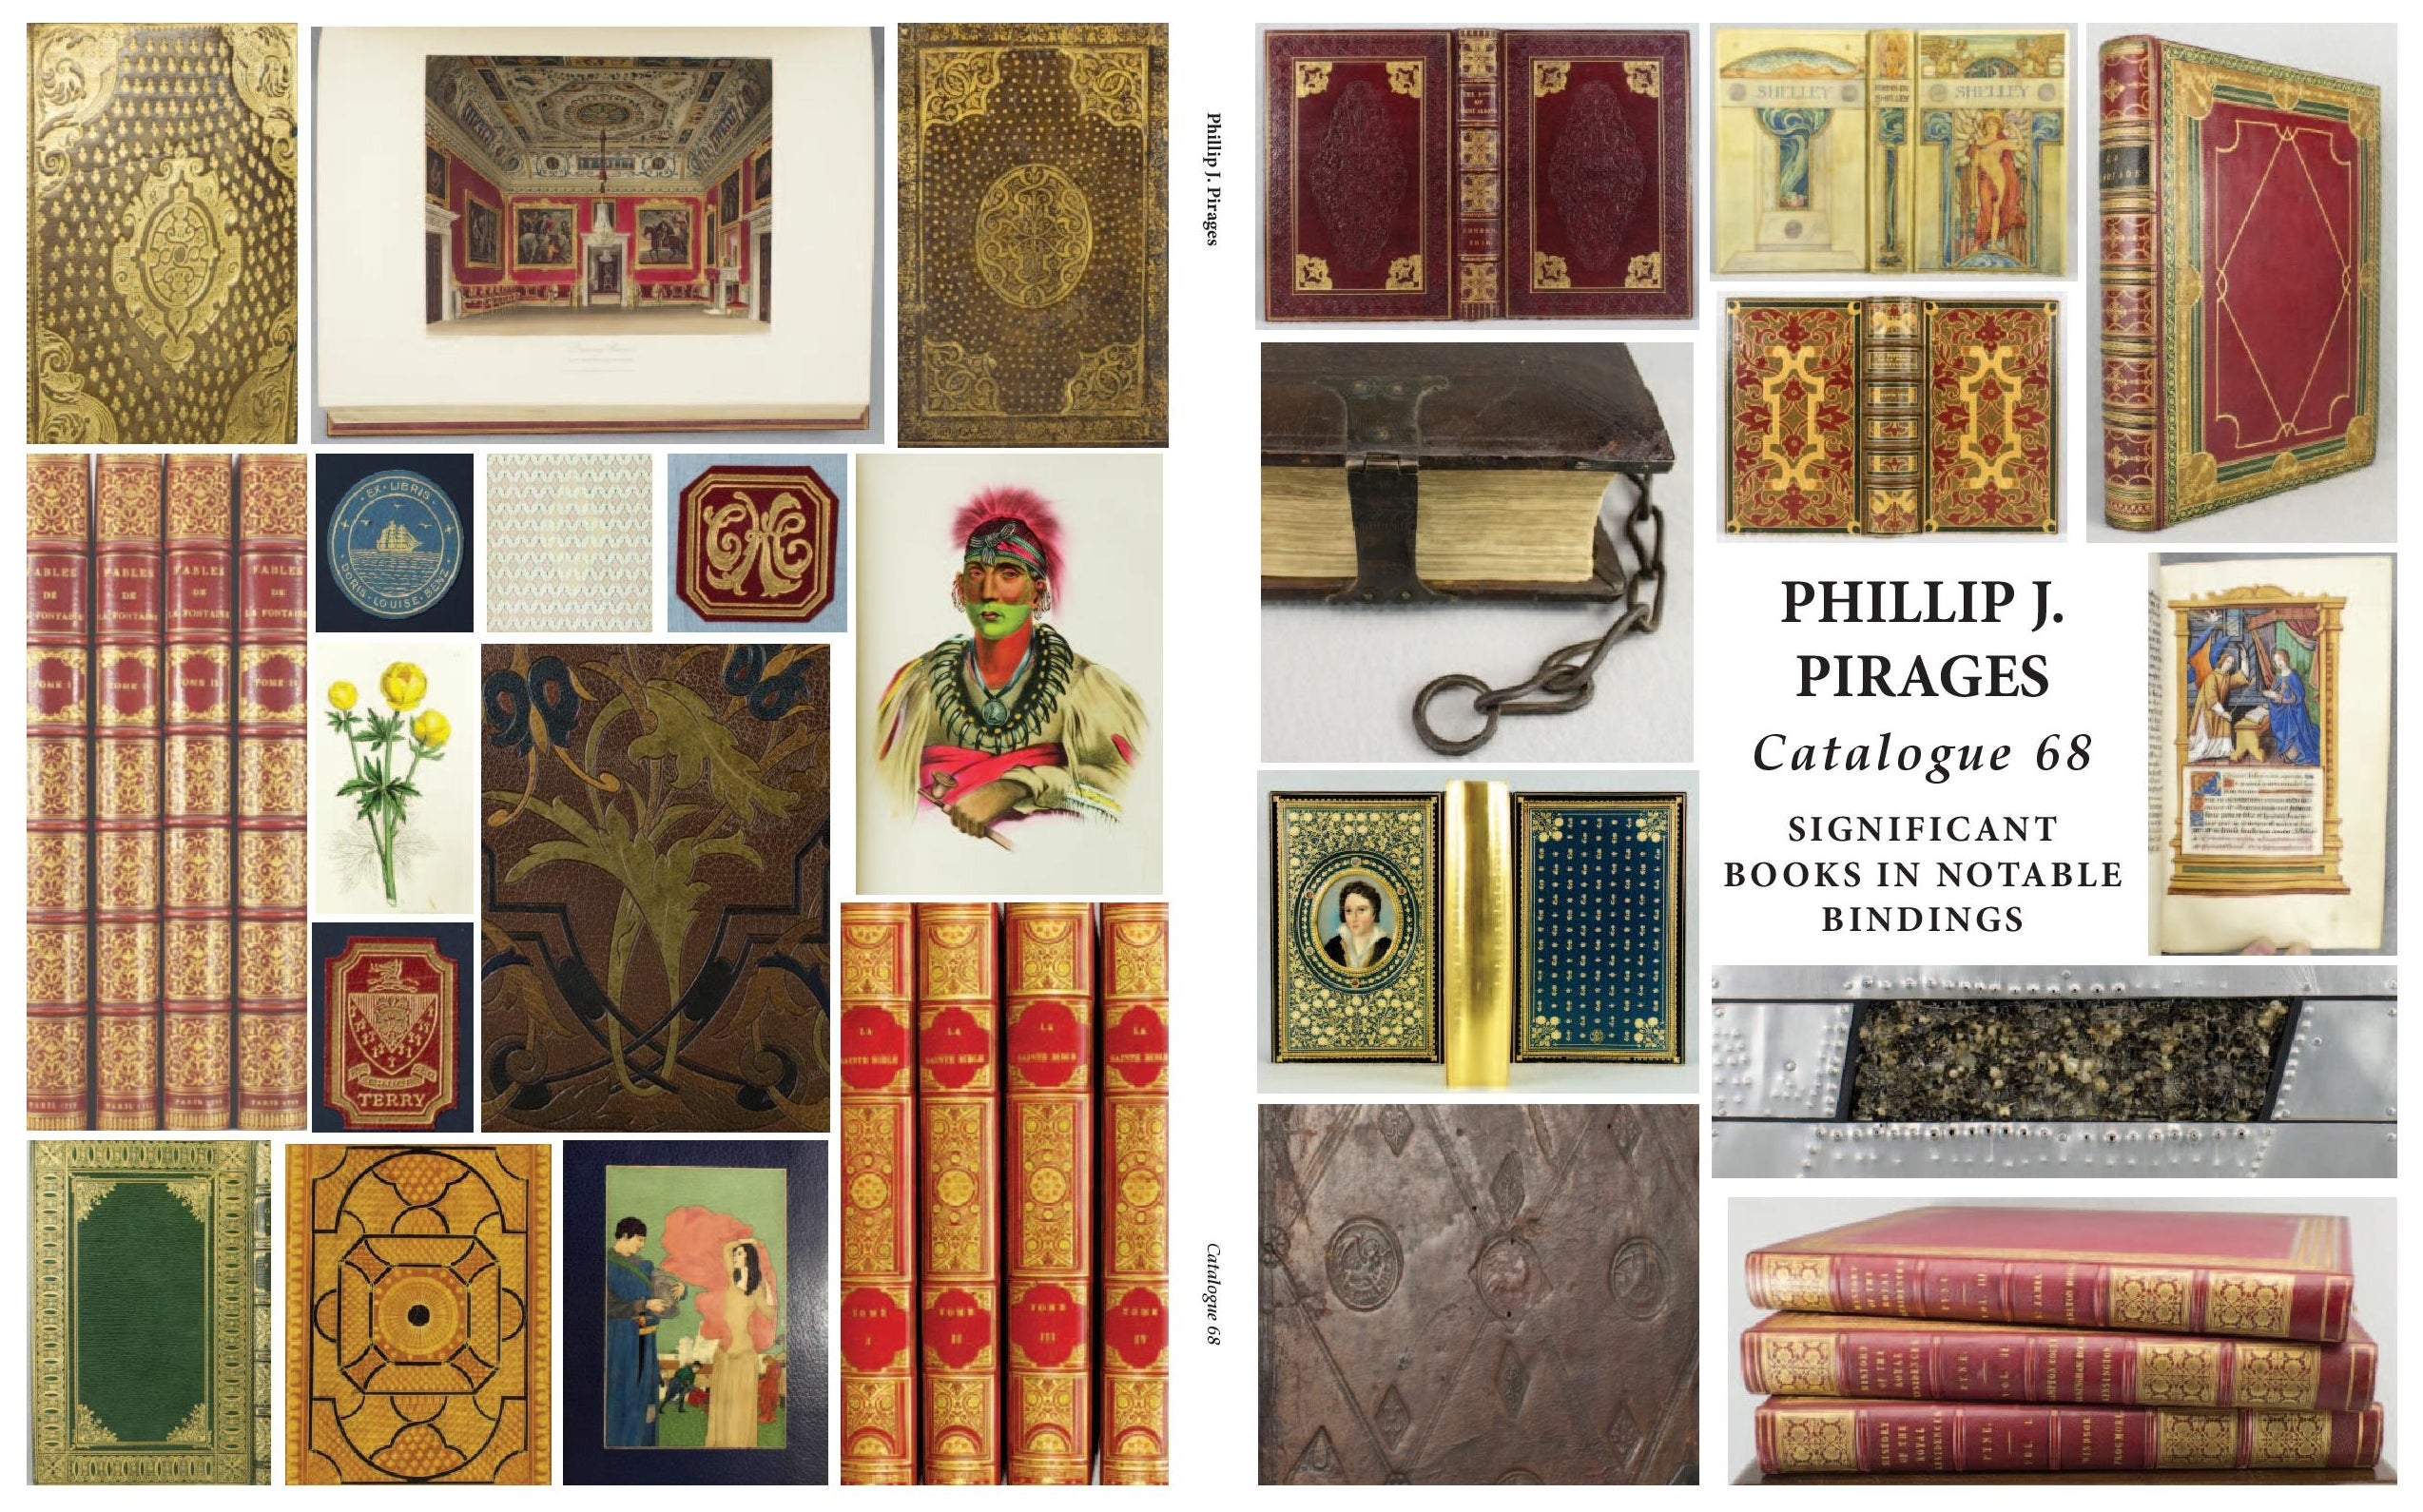 Phillip J. Pirages Catalogue 68